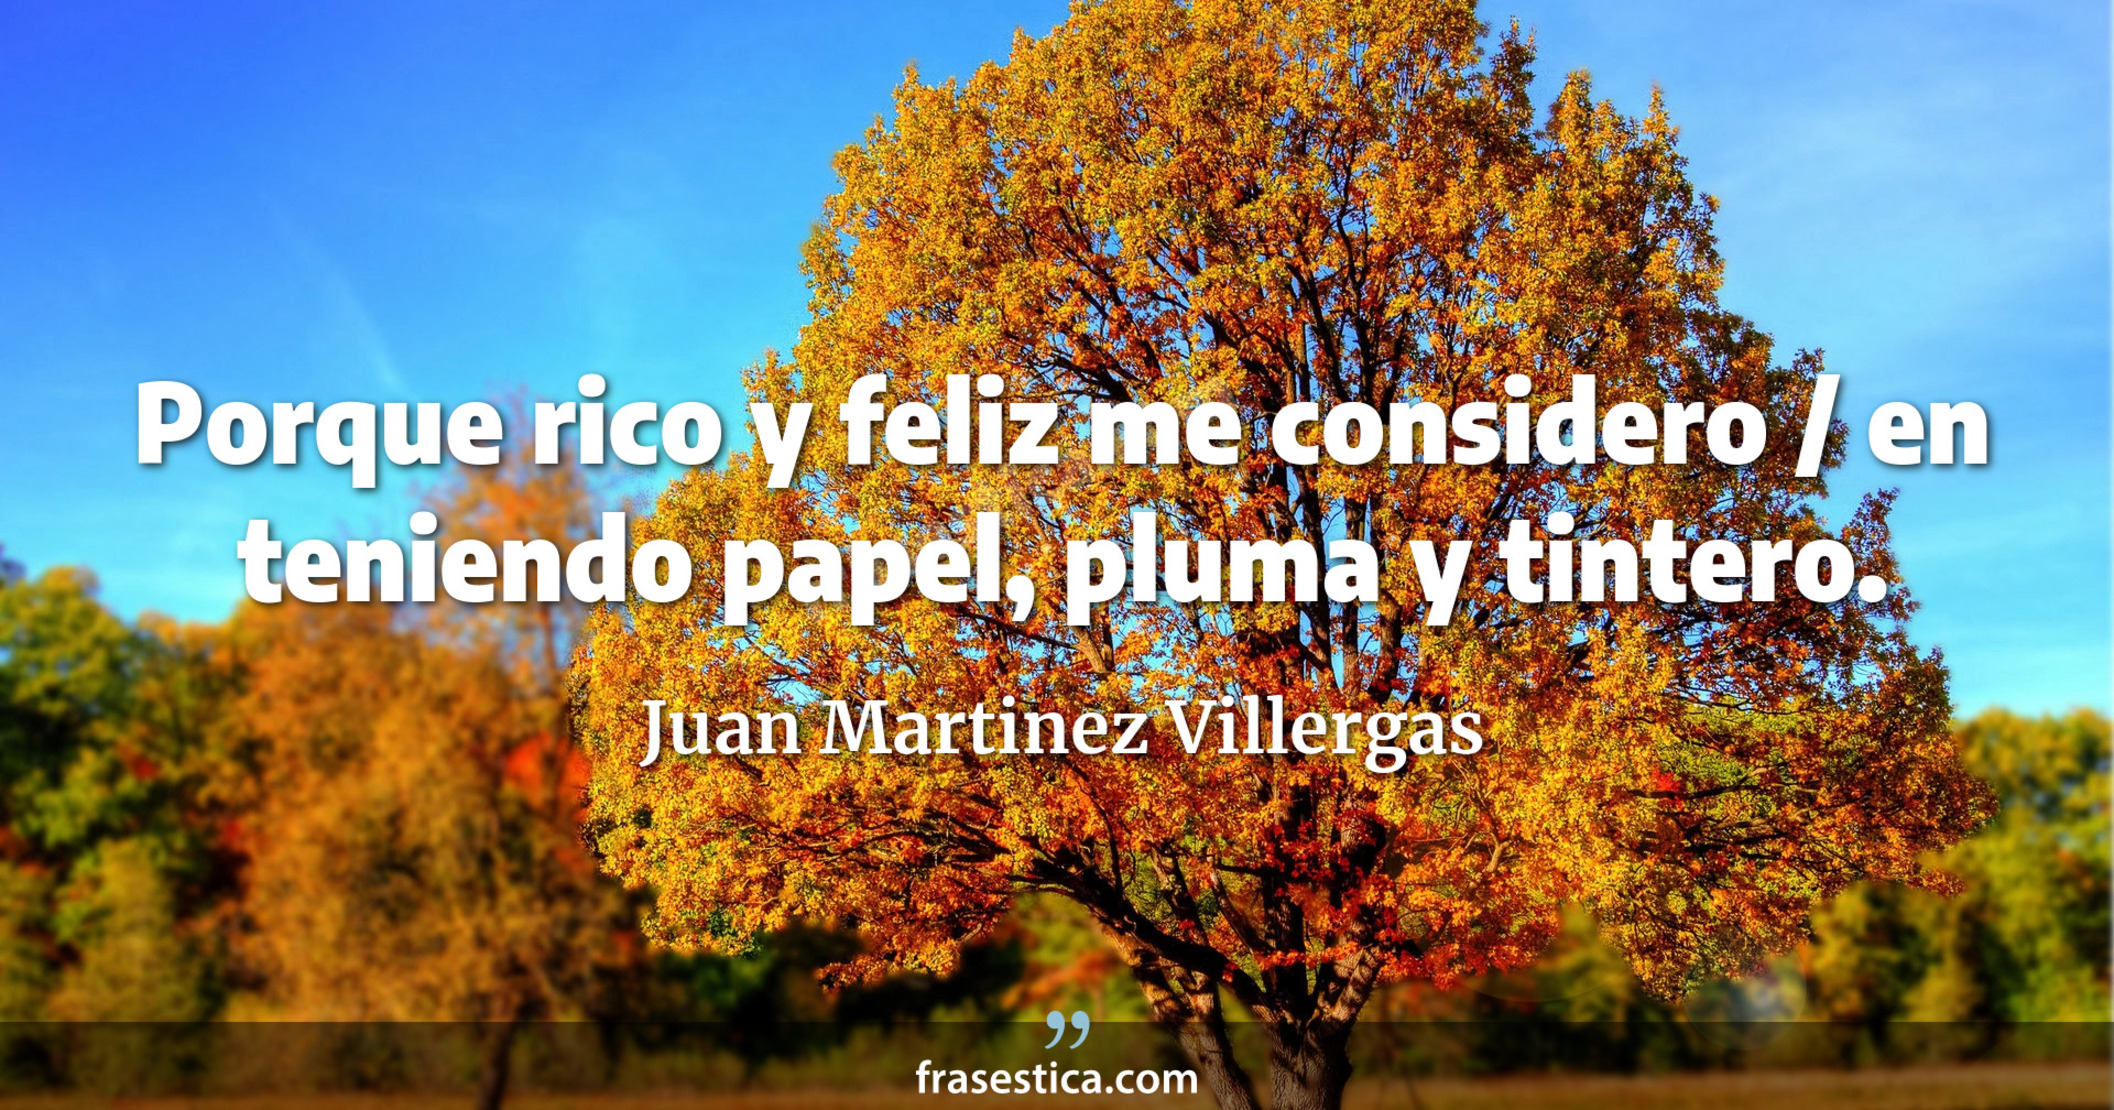 Porque rico y feliz me considero / en teniendo papel, pluma y tintero. - Juan Martinez Villergas